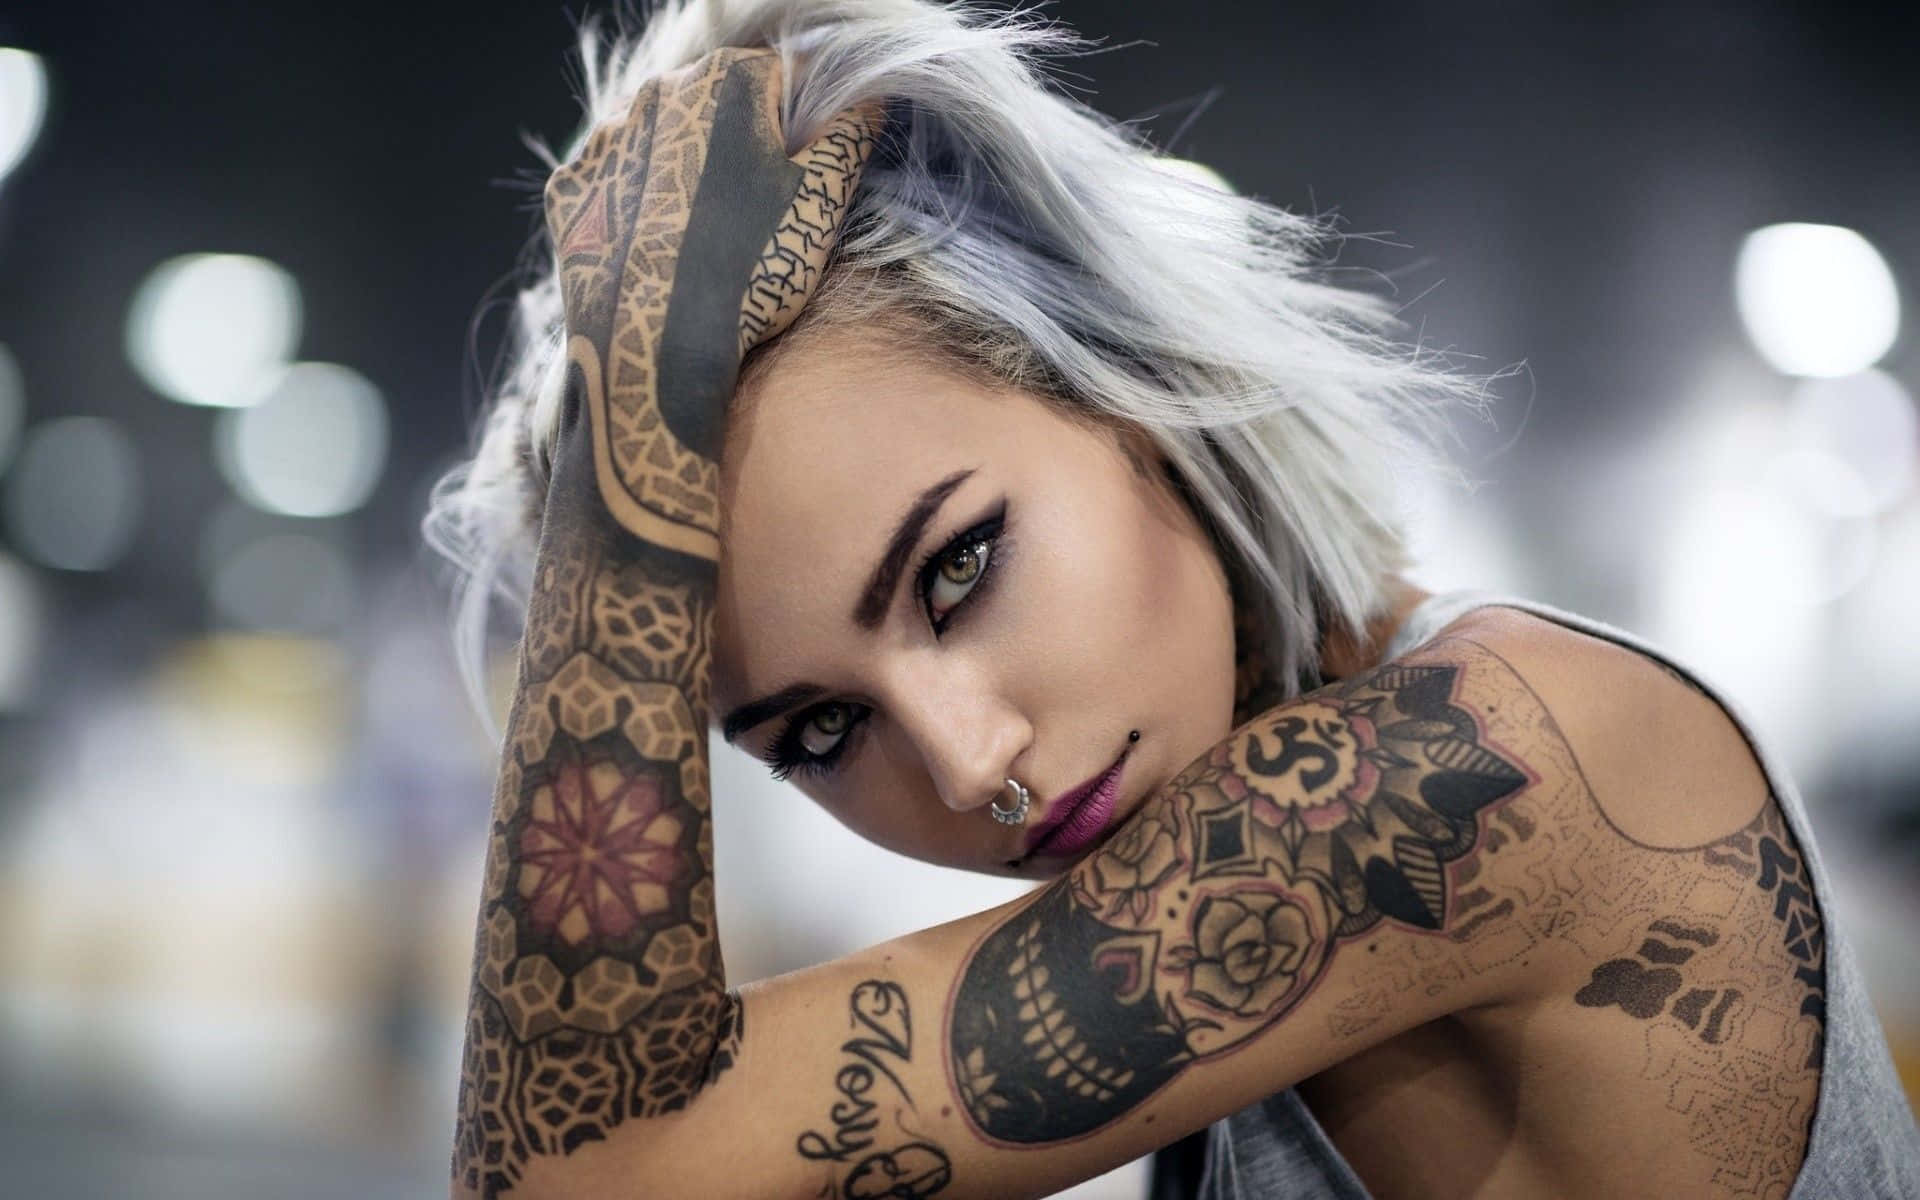 Enkvinna Med Tatueringar På Sin Arm